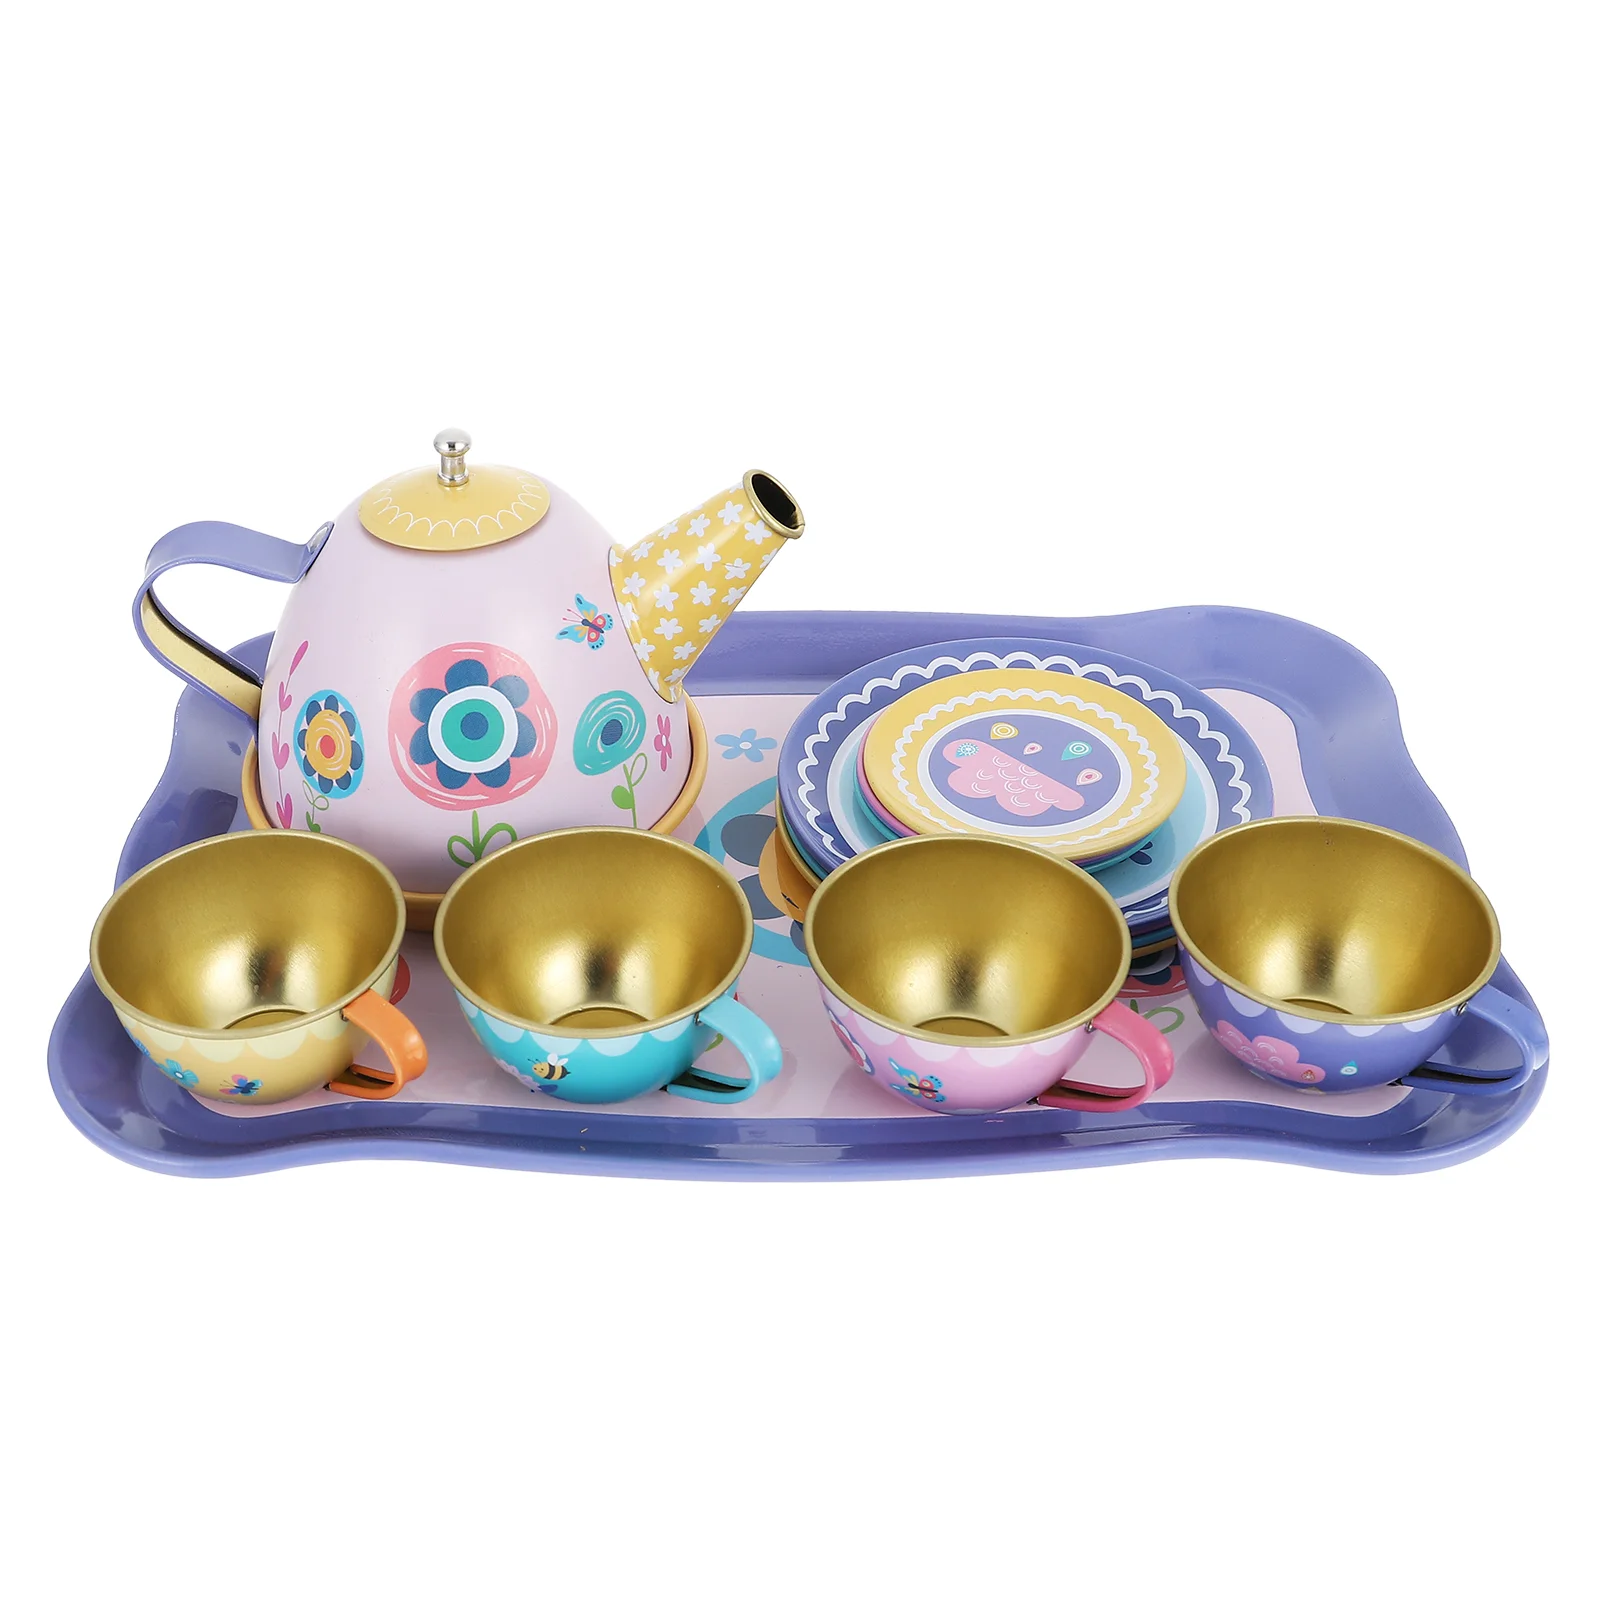 

Afternoon Tea Toys Teapot Dishes Garden Pretend Playset Little Girl Tinplate Secret